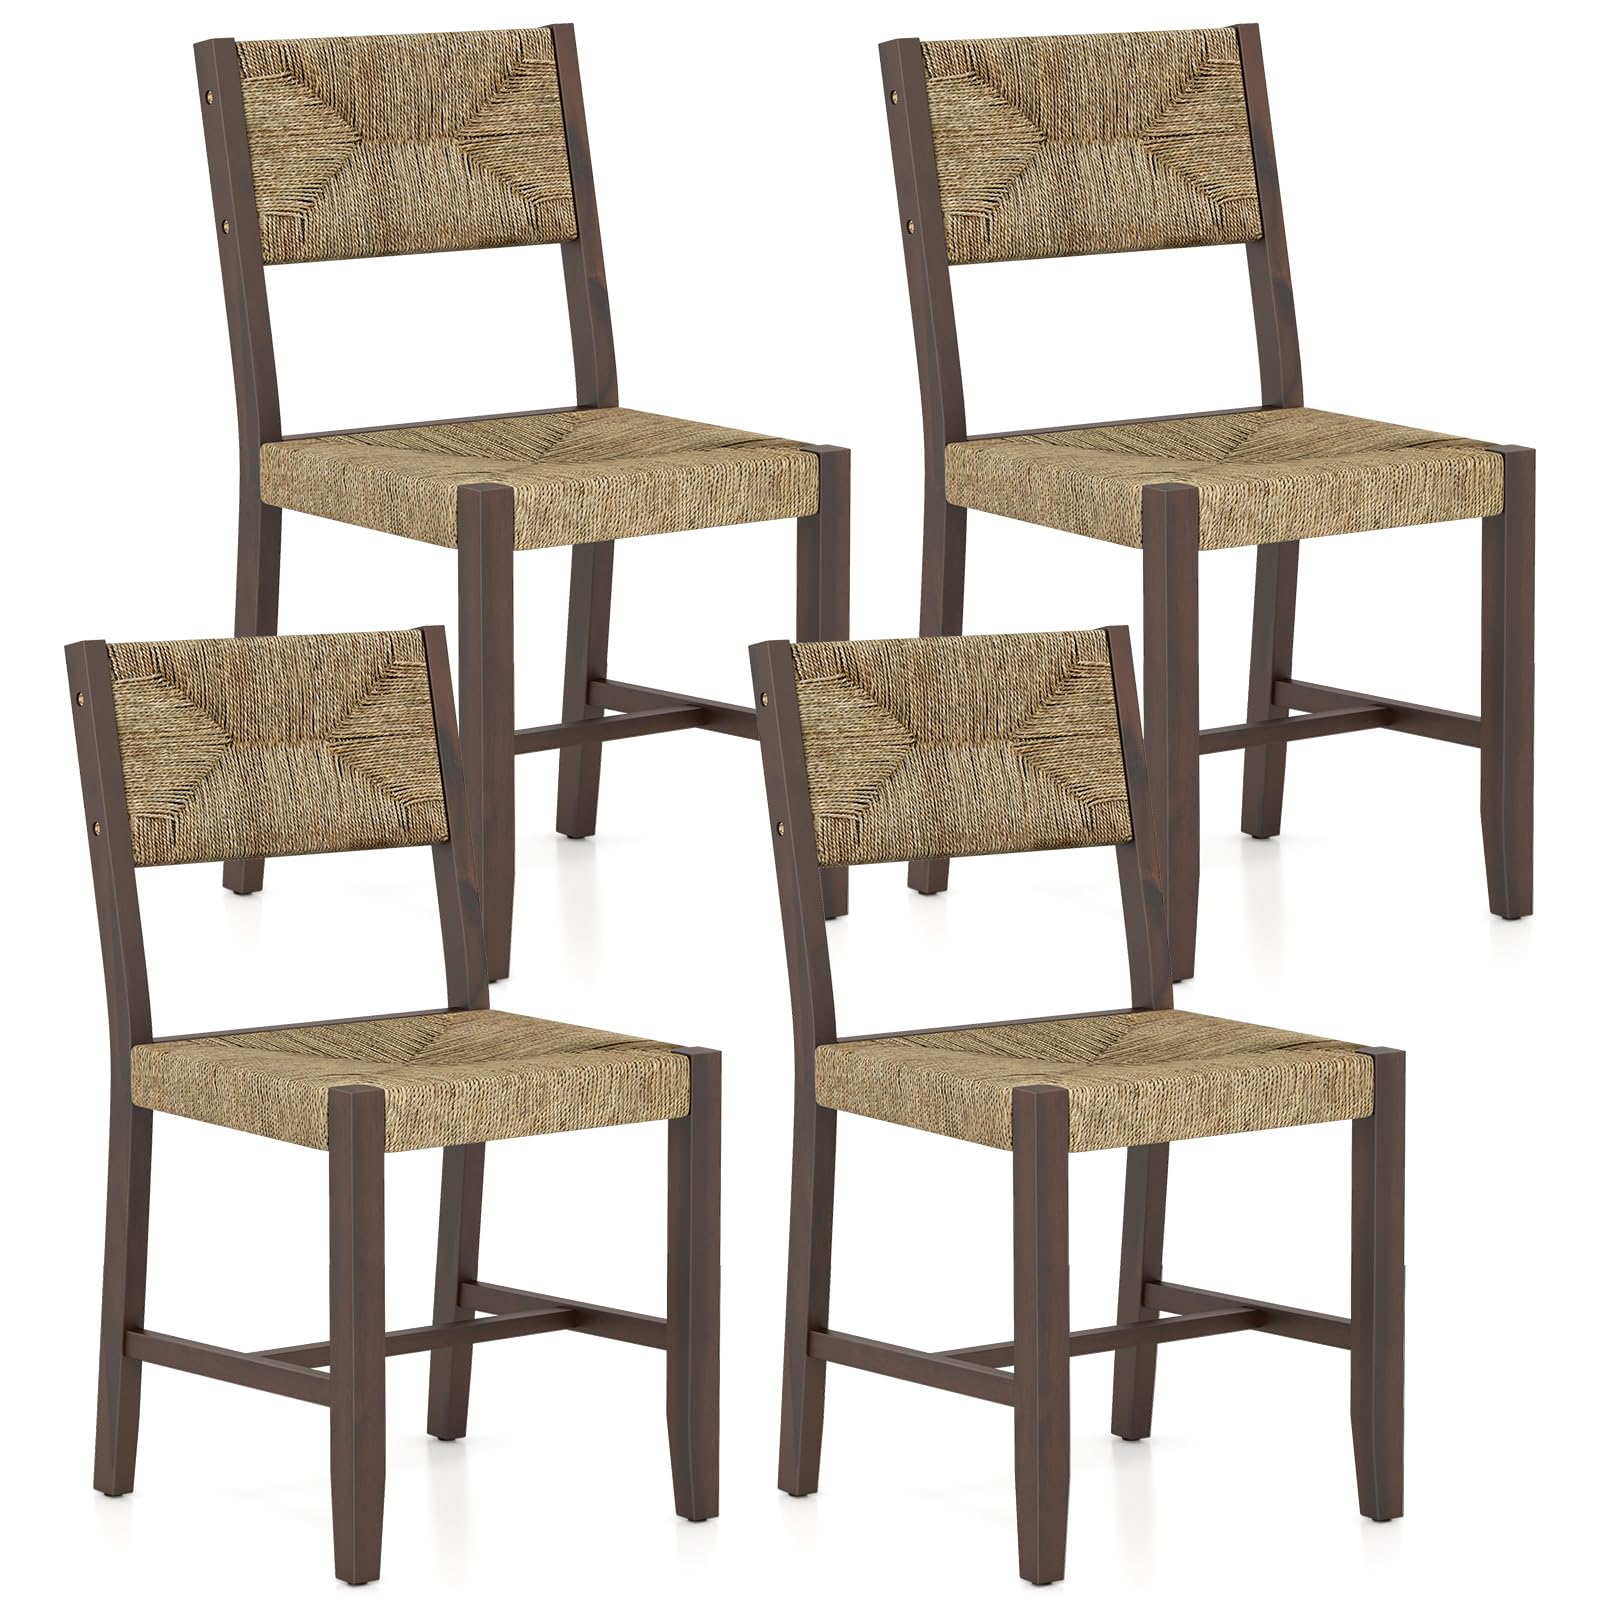 Giantex Rattan Dining Chair, Farmhouse Cane Side Chairs